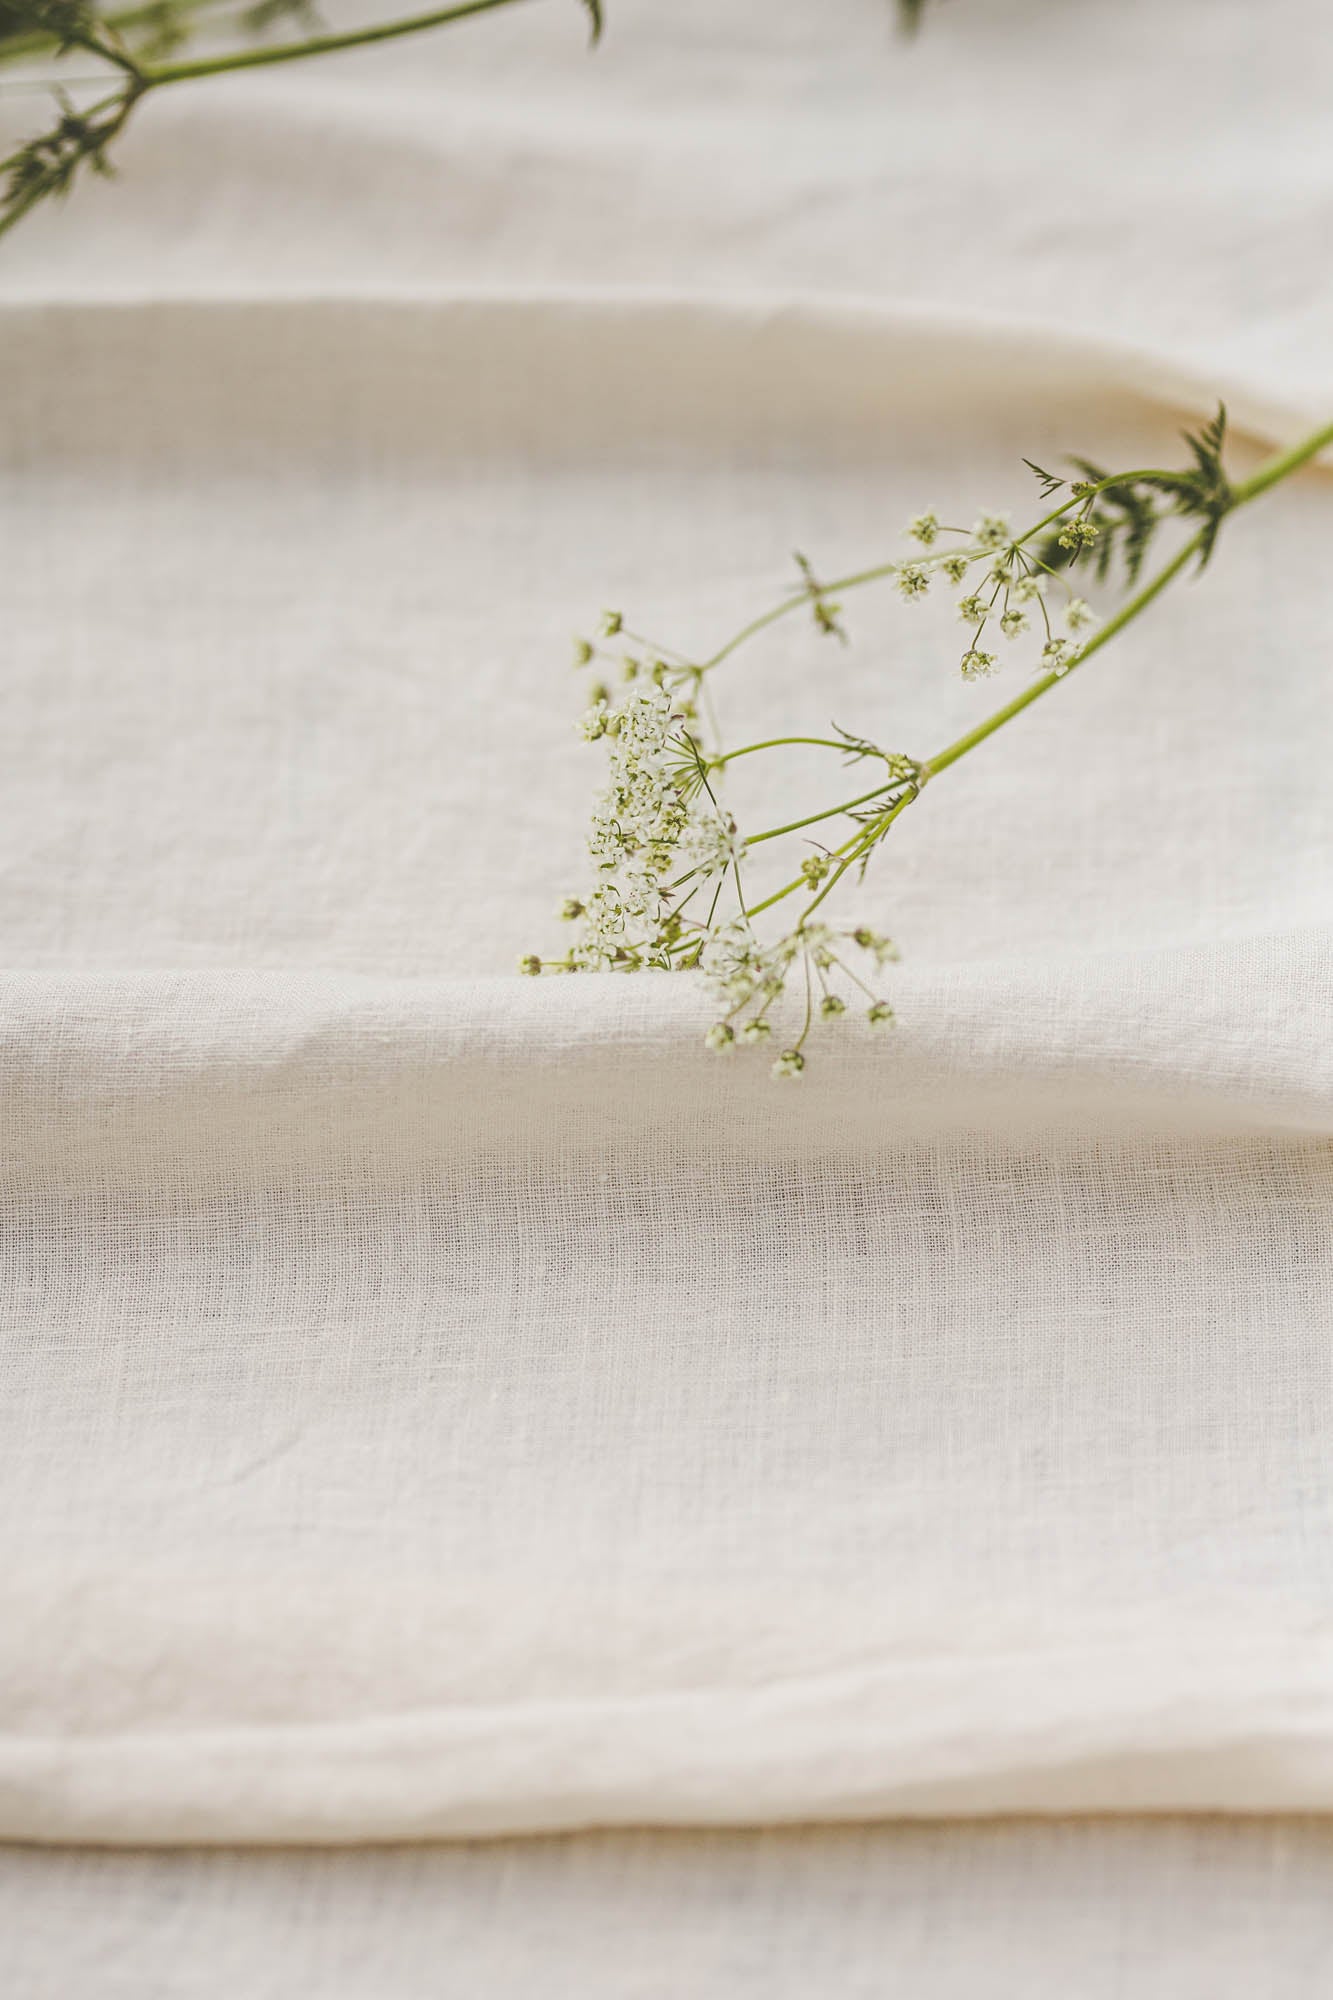 Cream linen tablecloth